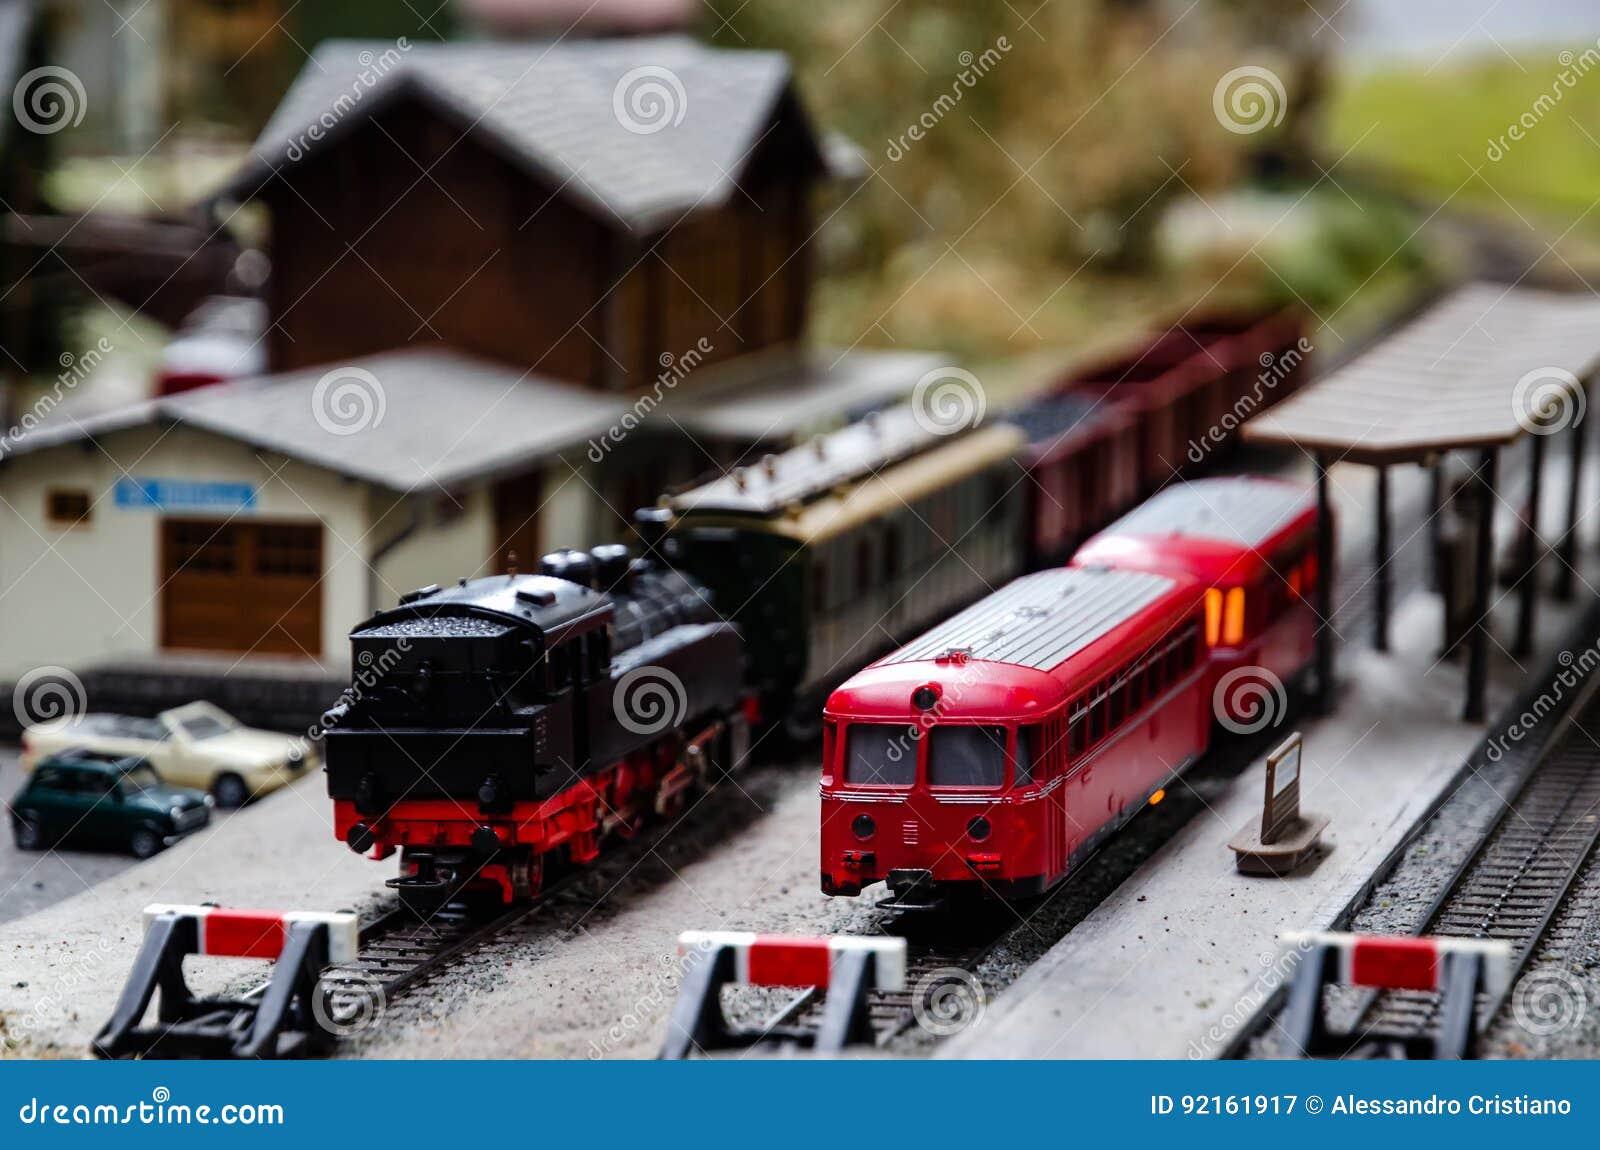 train model diorama